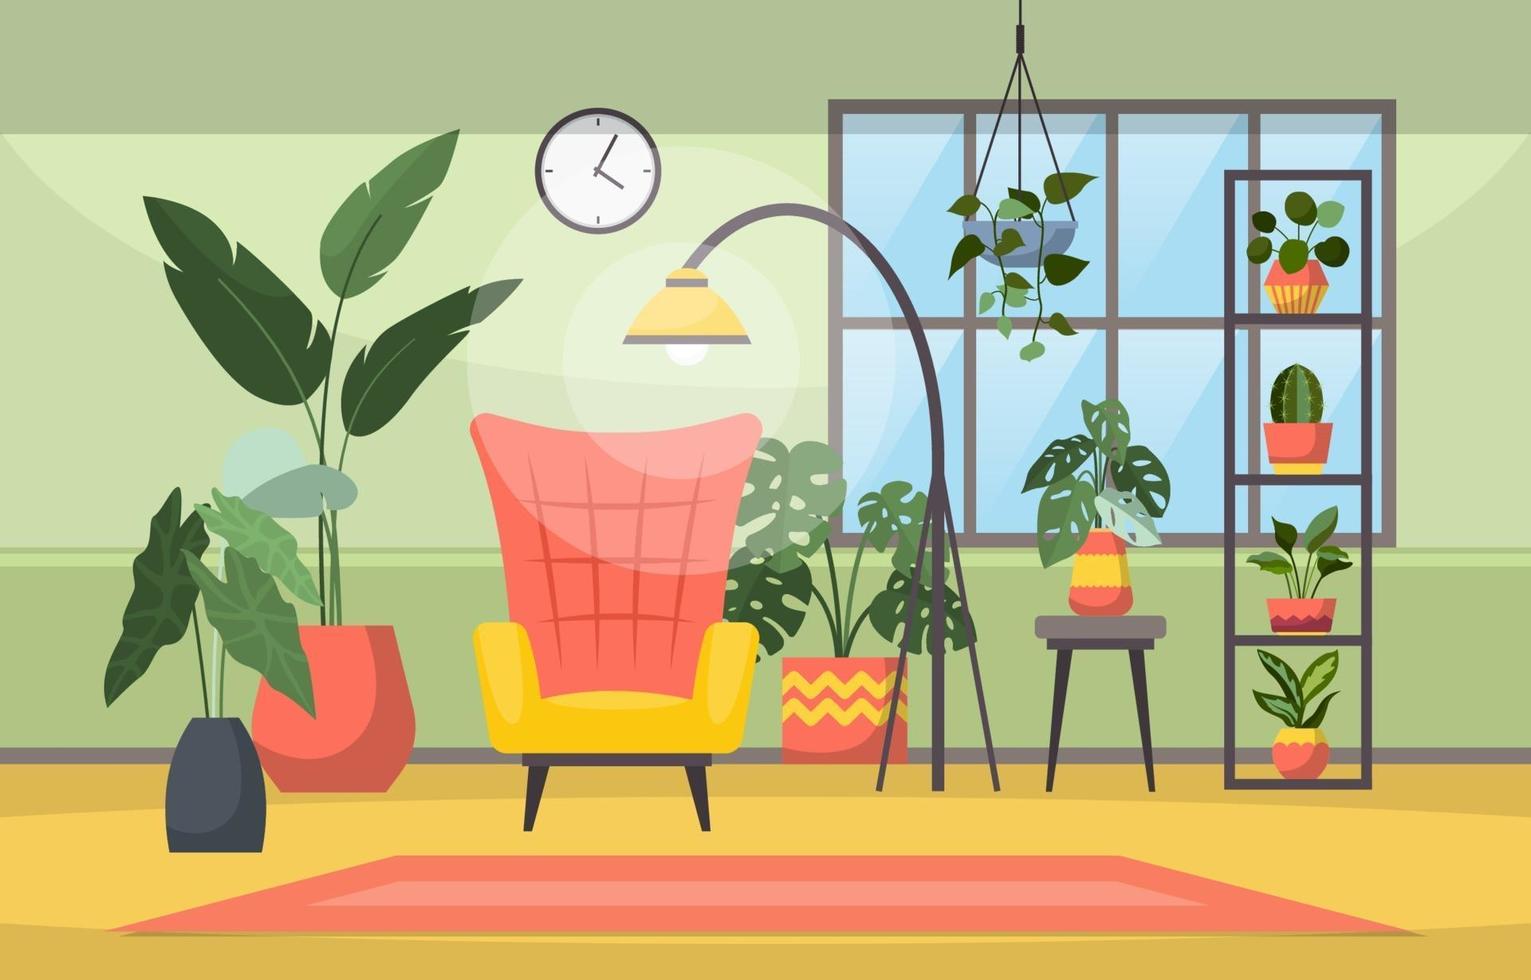 tropische kamerplant groene decoratieve plant in woonkamer illustratie vector